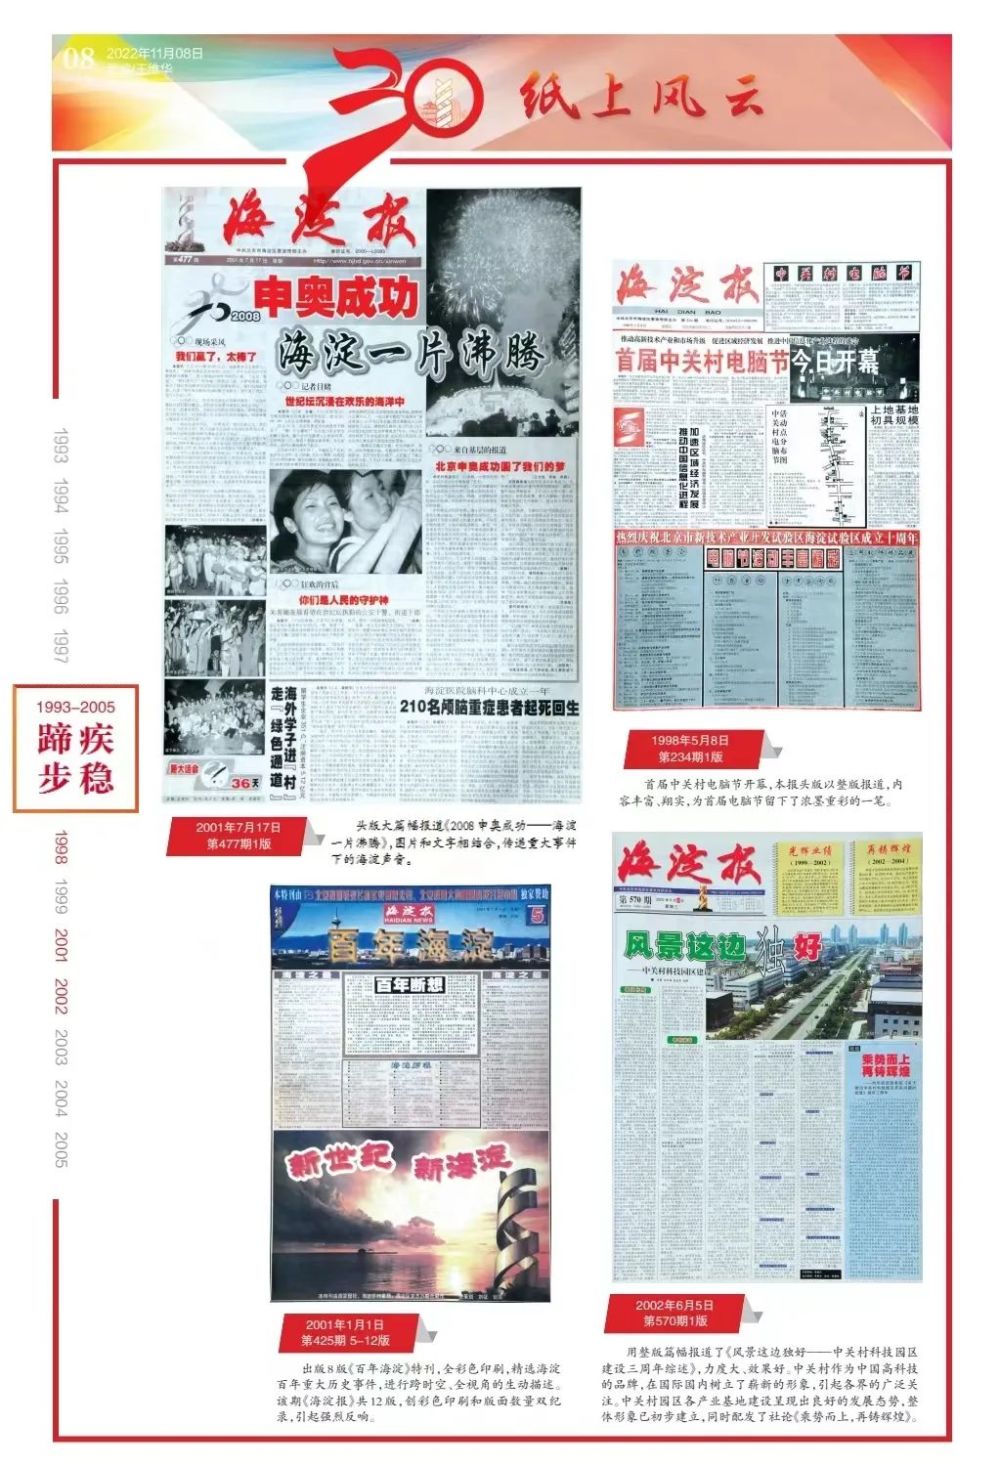 王合生李俊杰刘长利刘勇寄语！《海淀报》创刊30周年特刊来了——